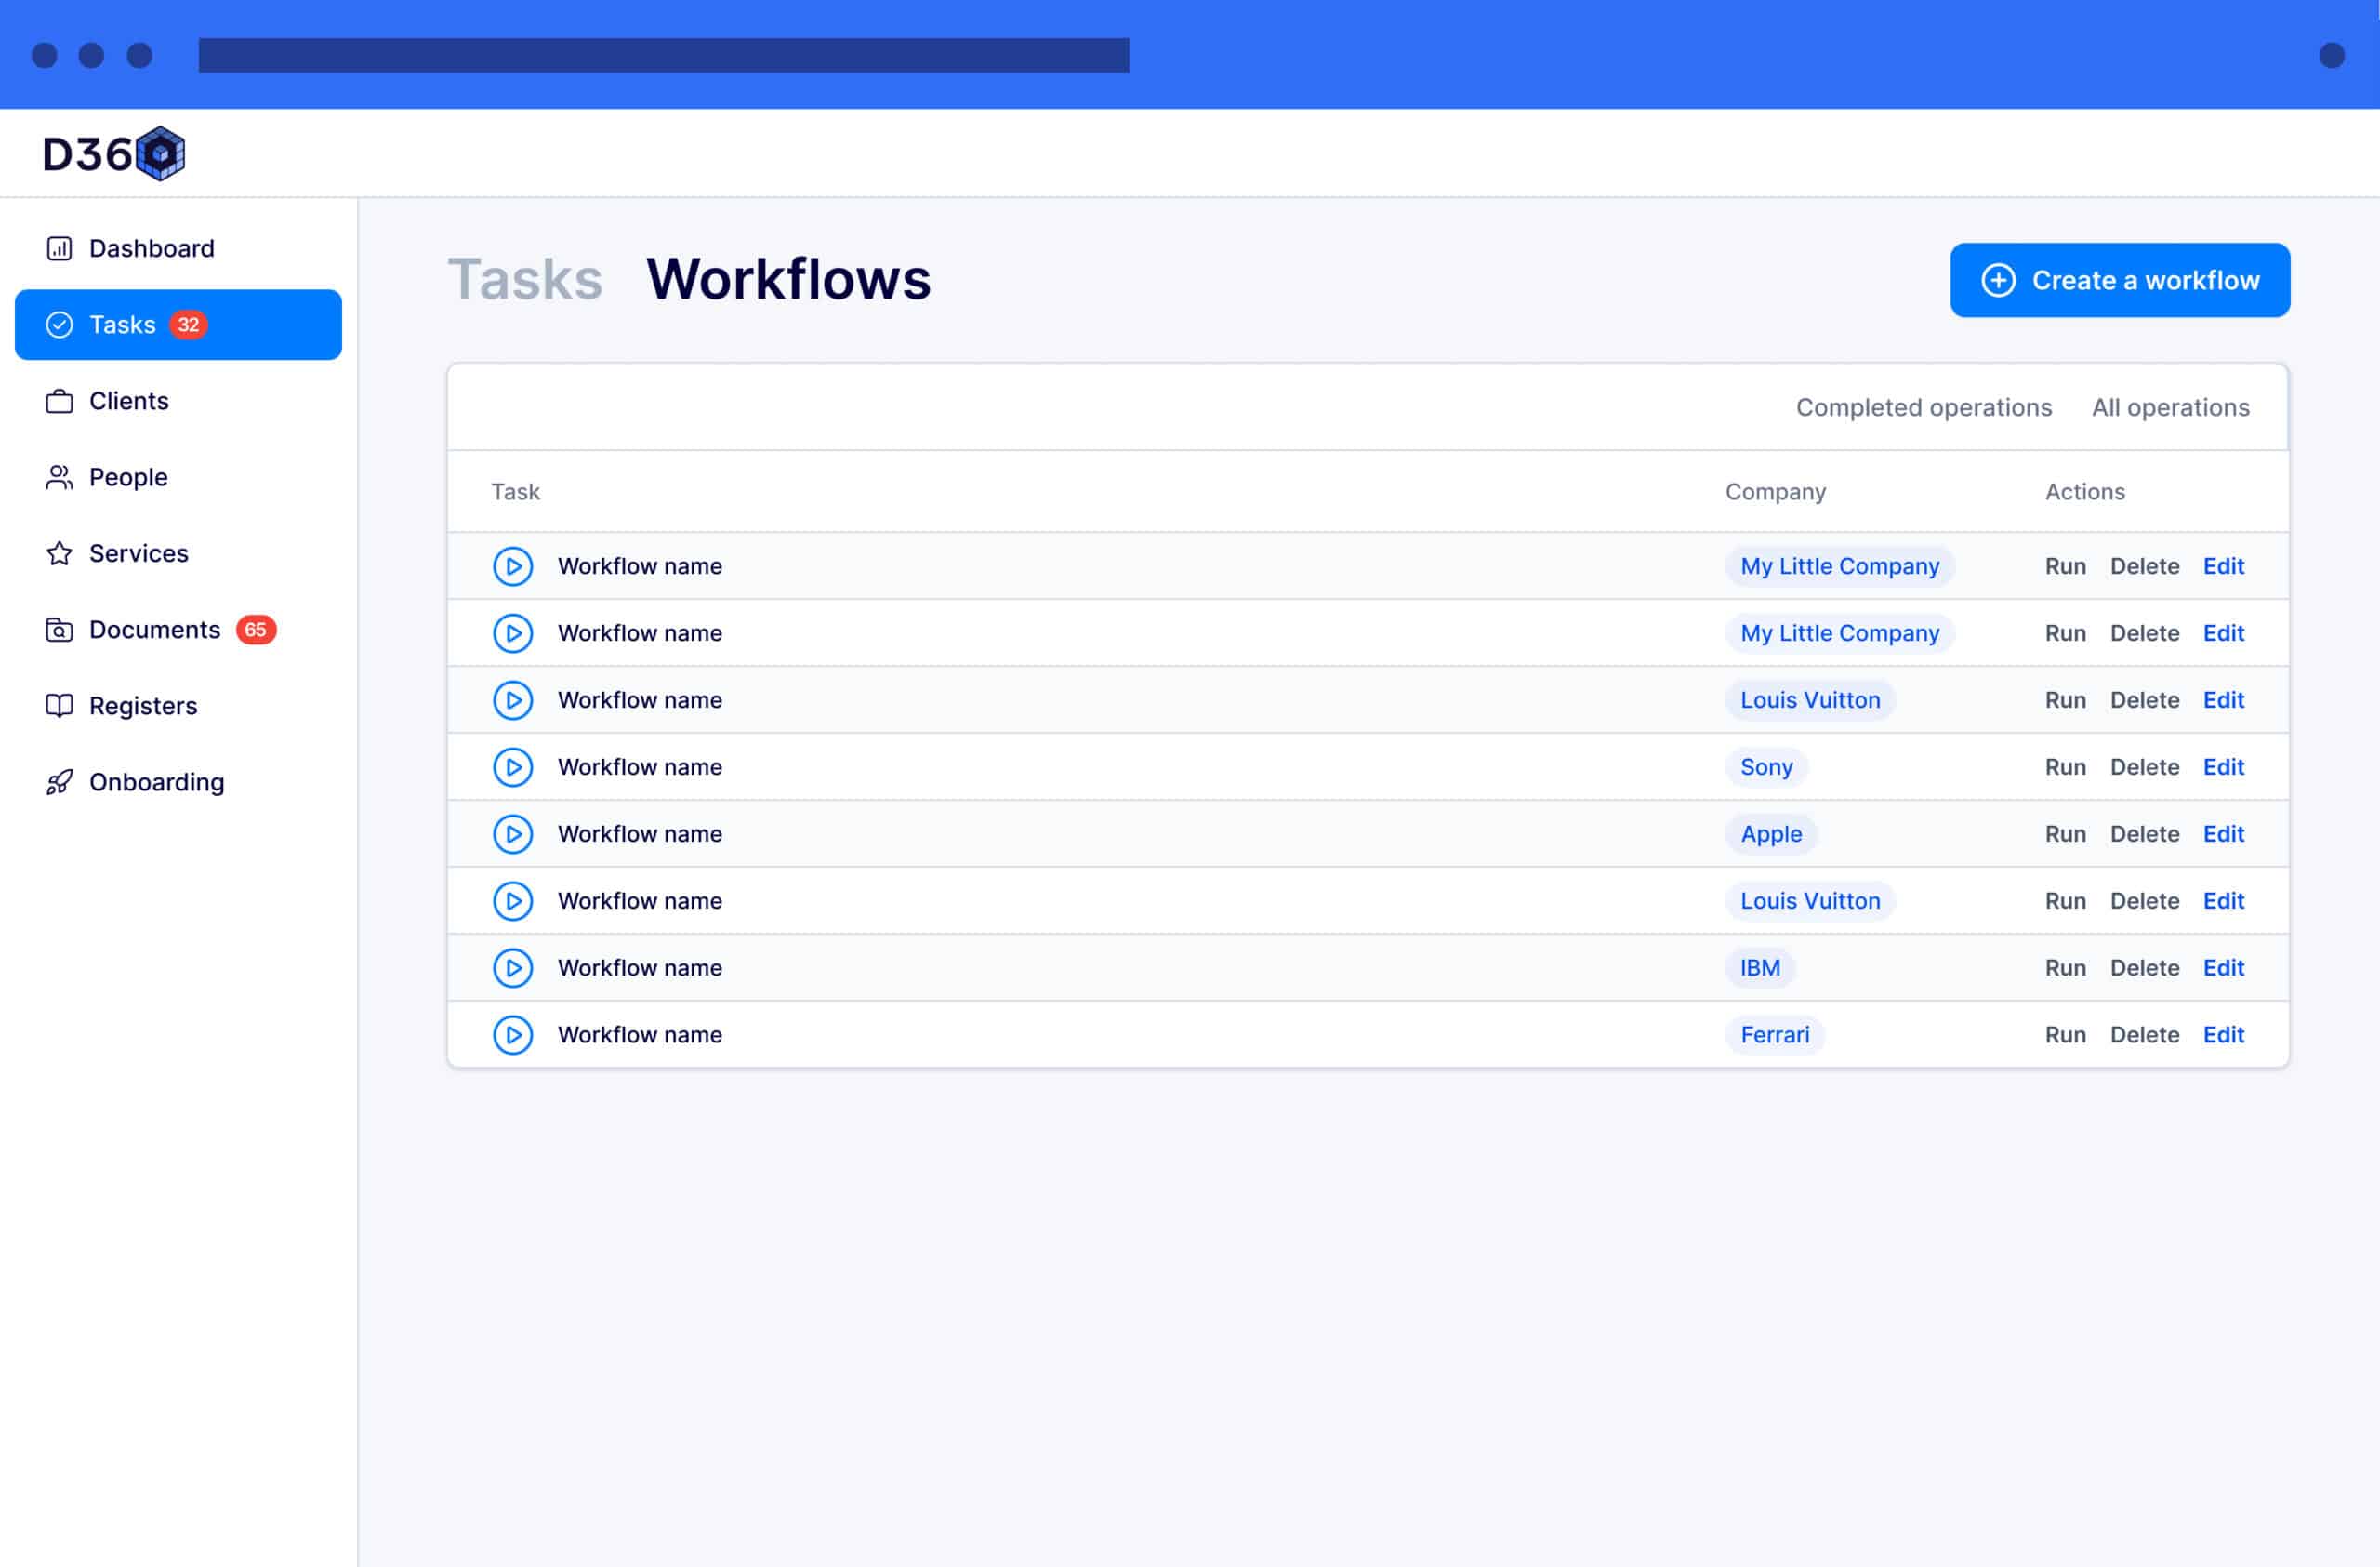 Tasks - Workflows